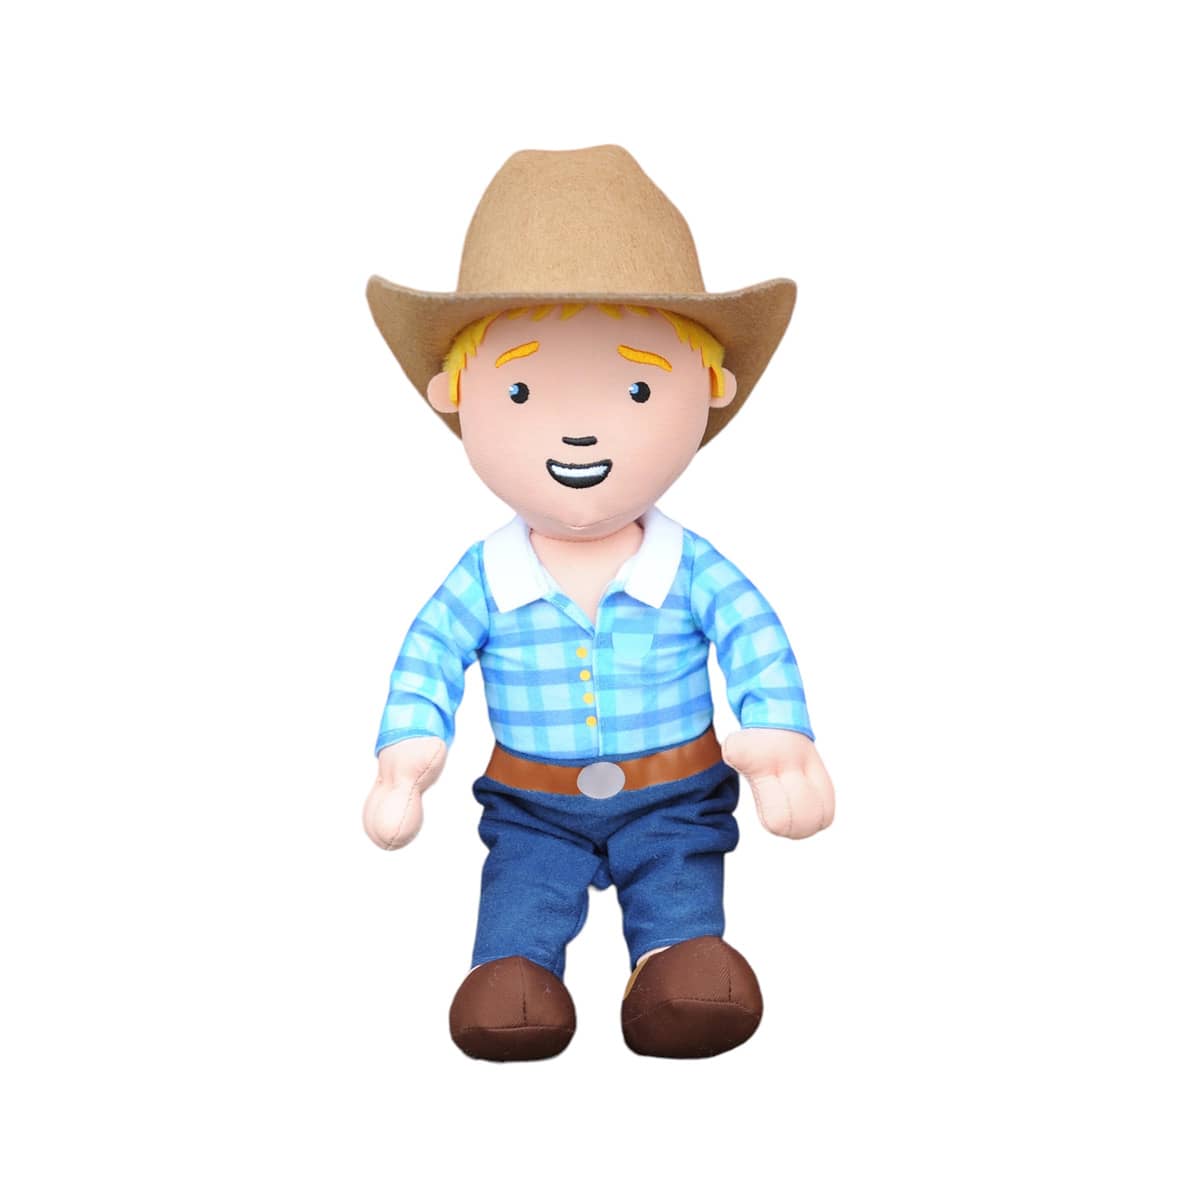 George the Farmer Cuddle Doll Toy - George the Farmer